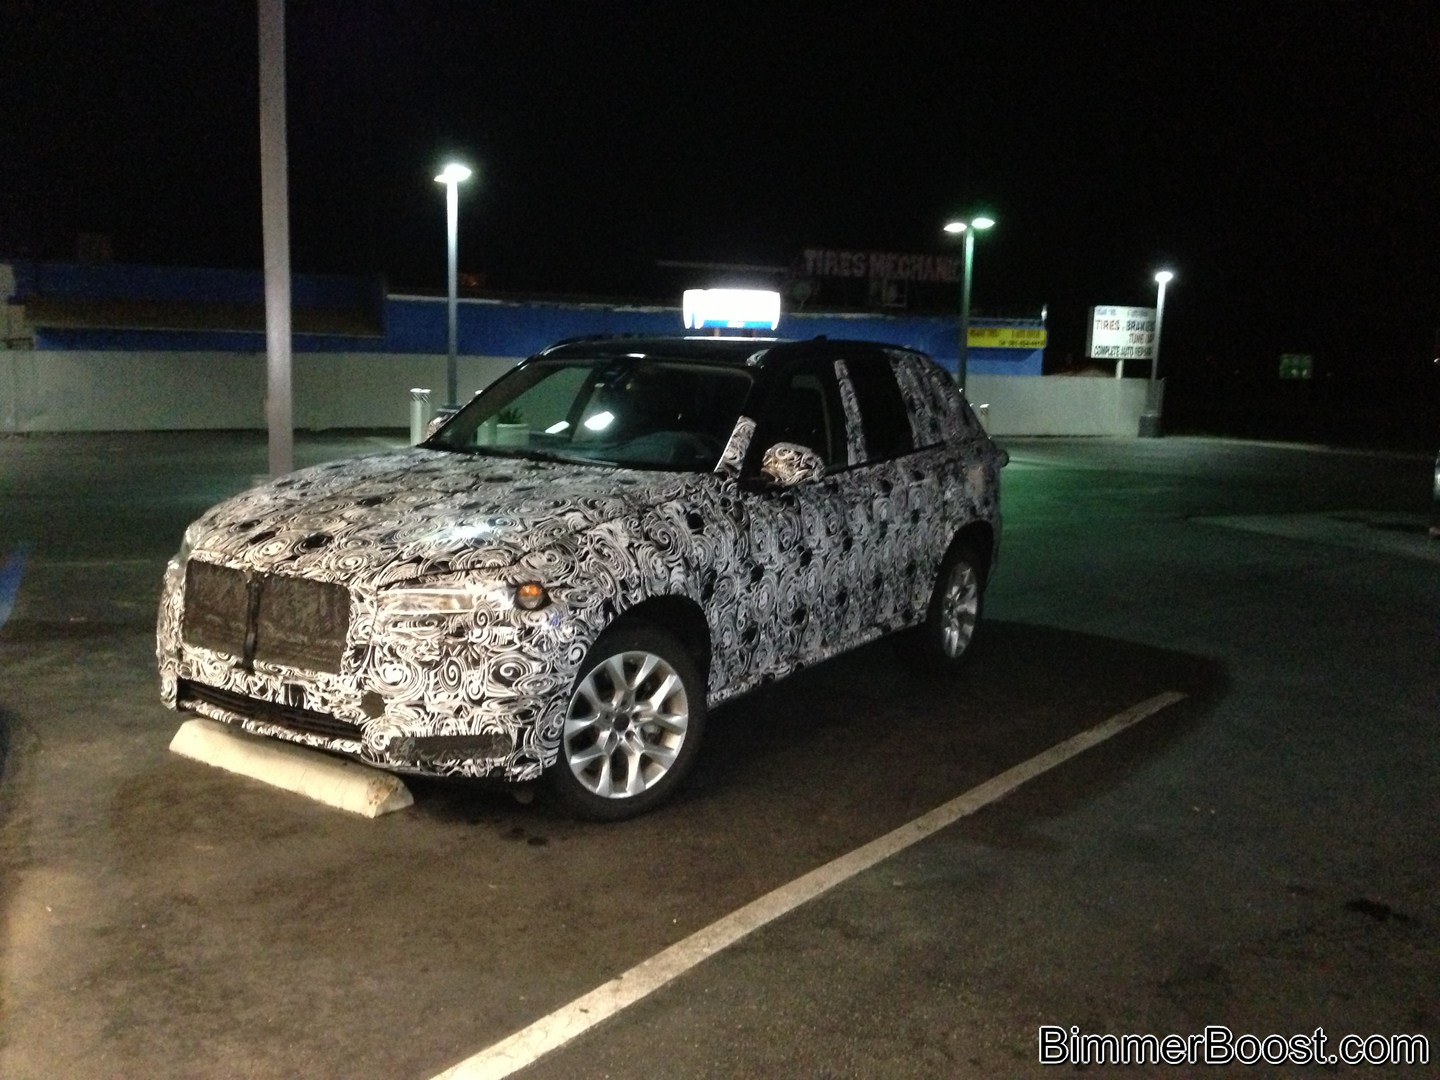  BMW X7'nin Spy fotoğrafçılara yakalandığı iddia ediliyor.